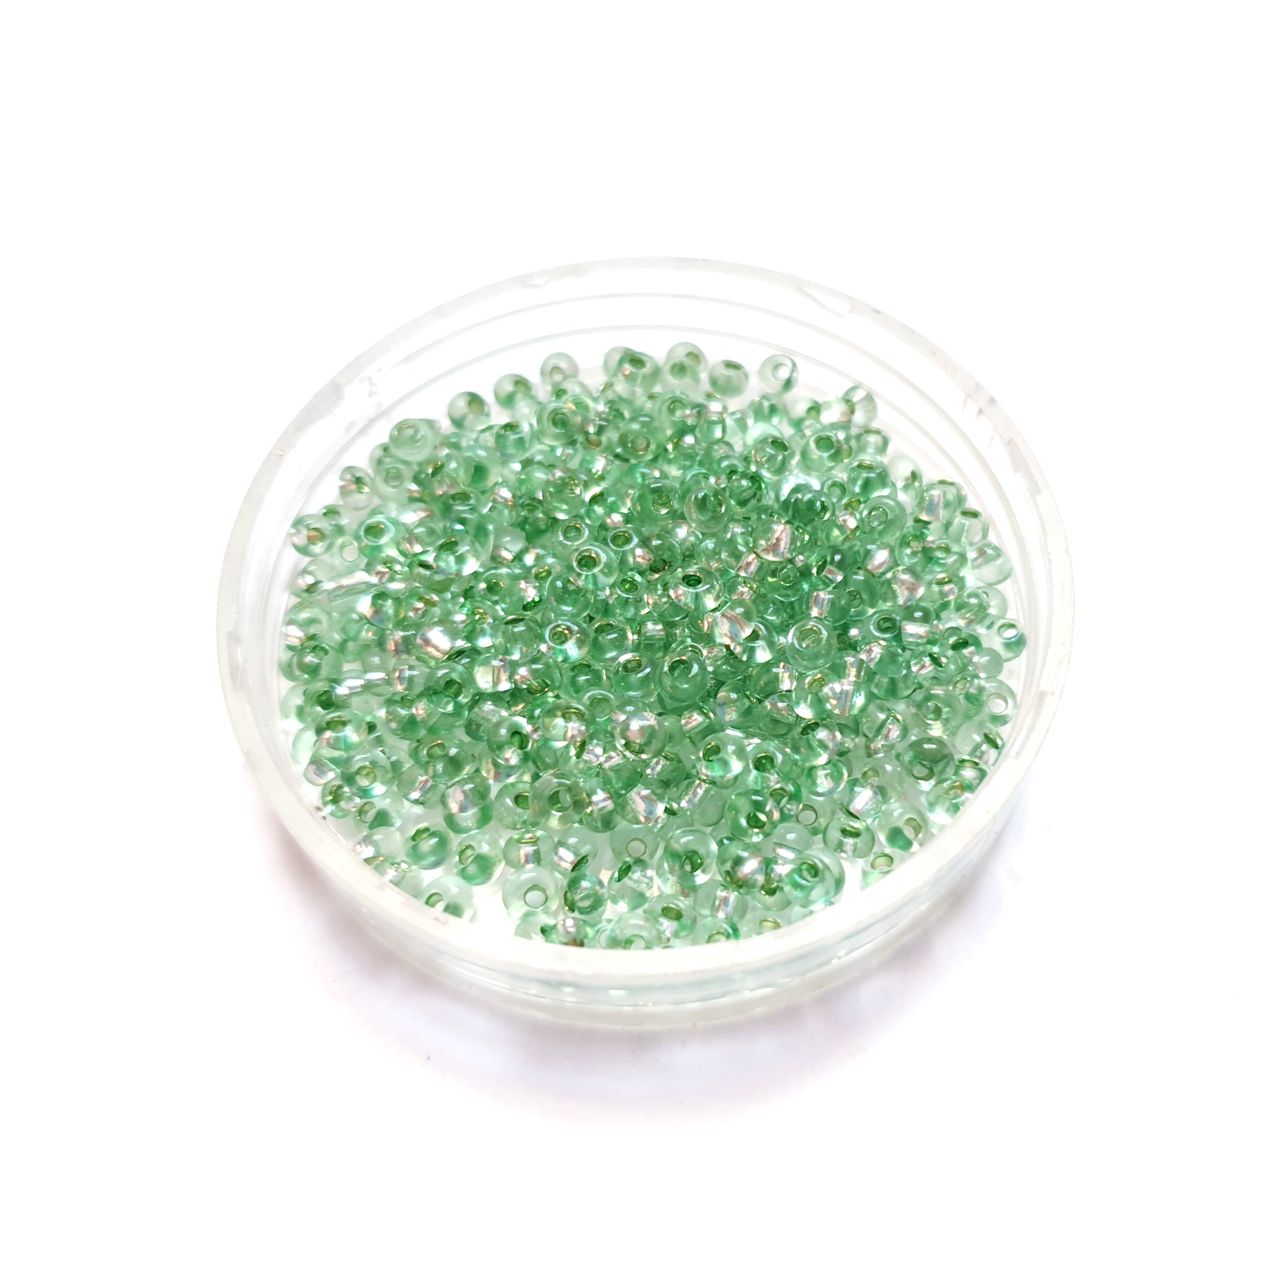 8 0 Czech Seed Bead Green - Mint Silverlined